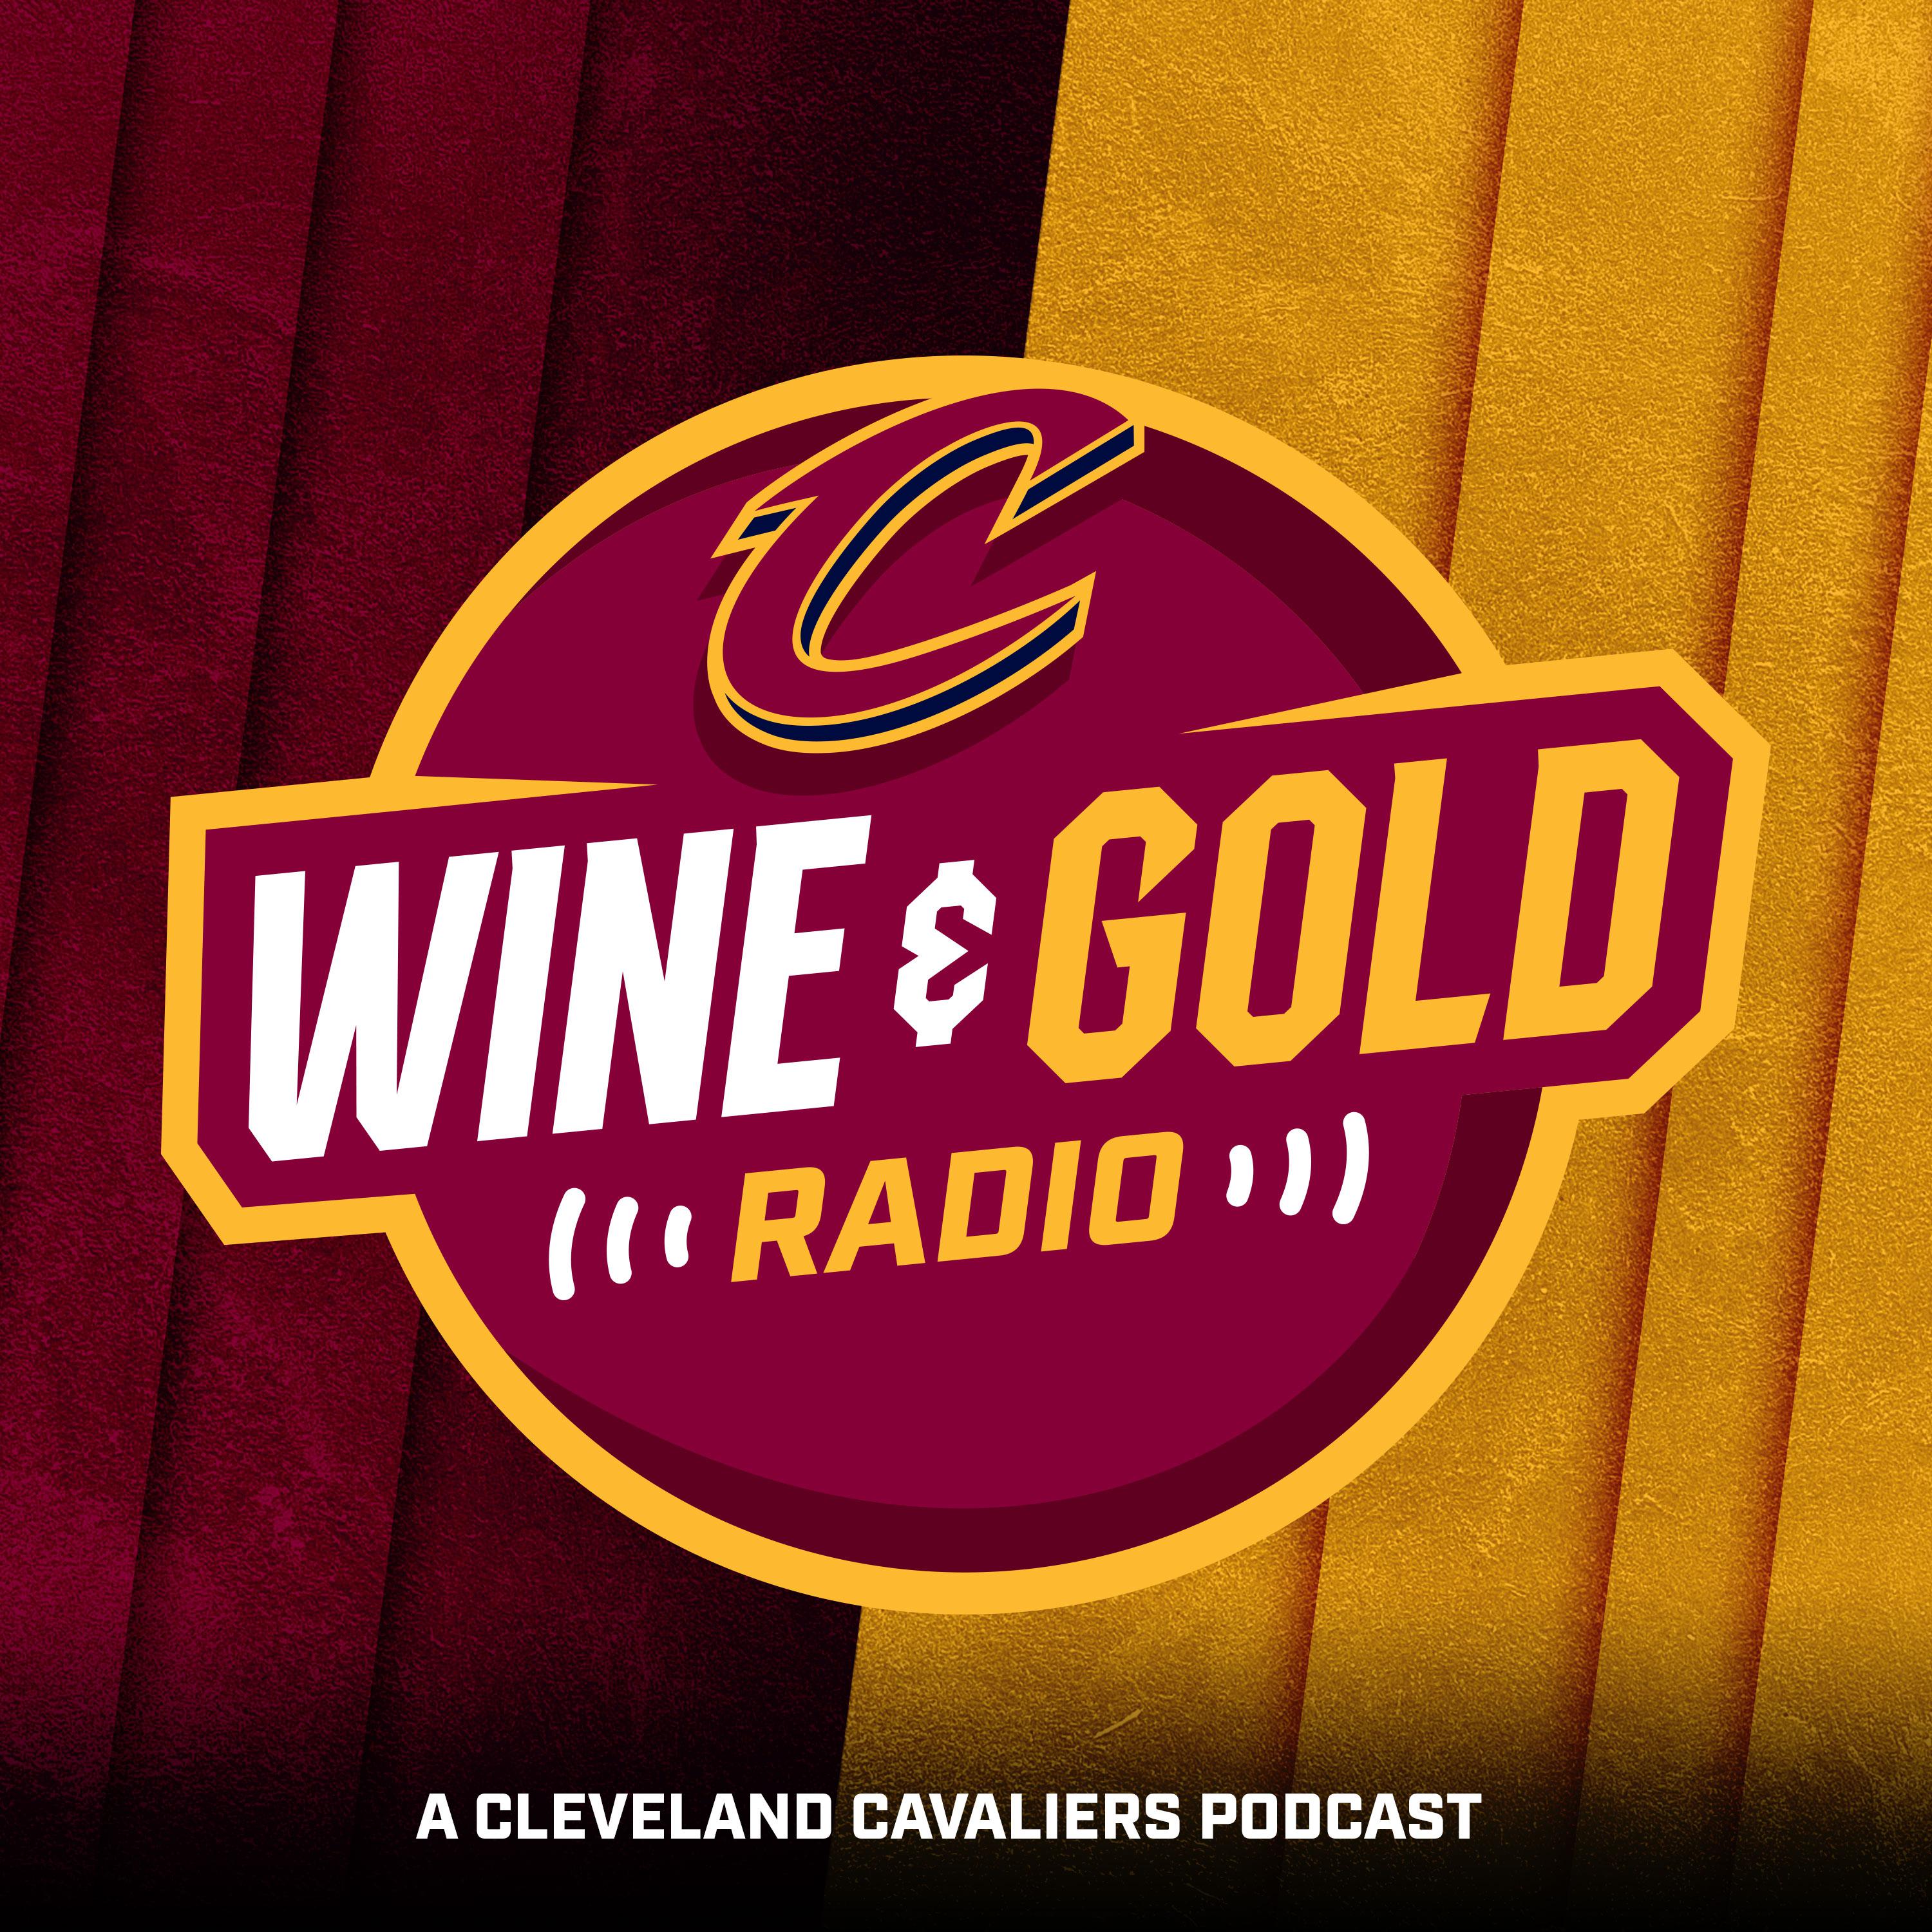 Wine & Gold Radio podcast